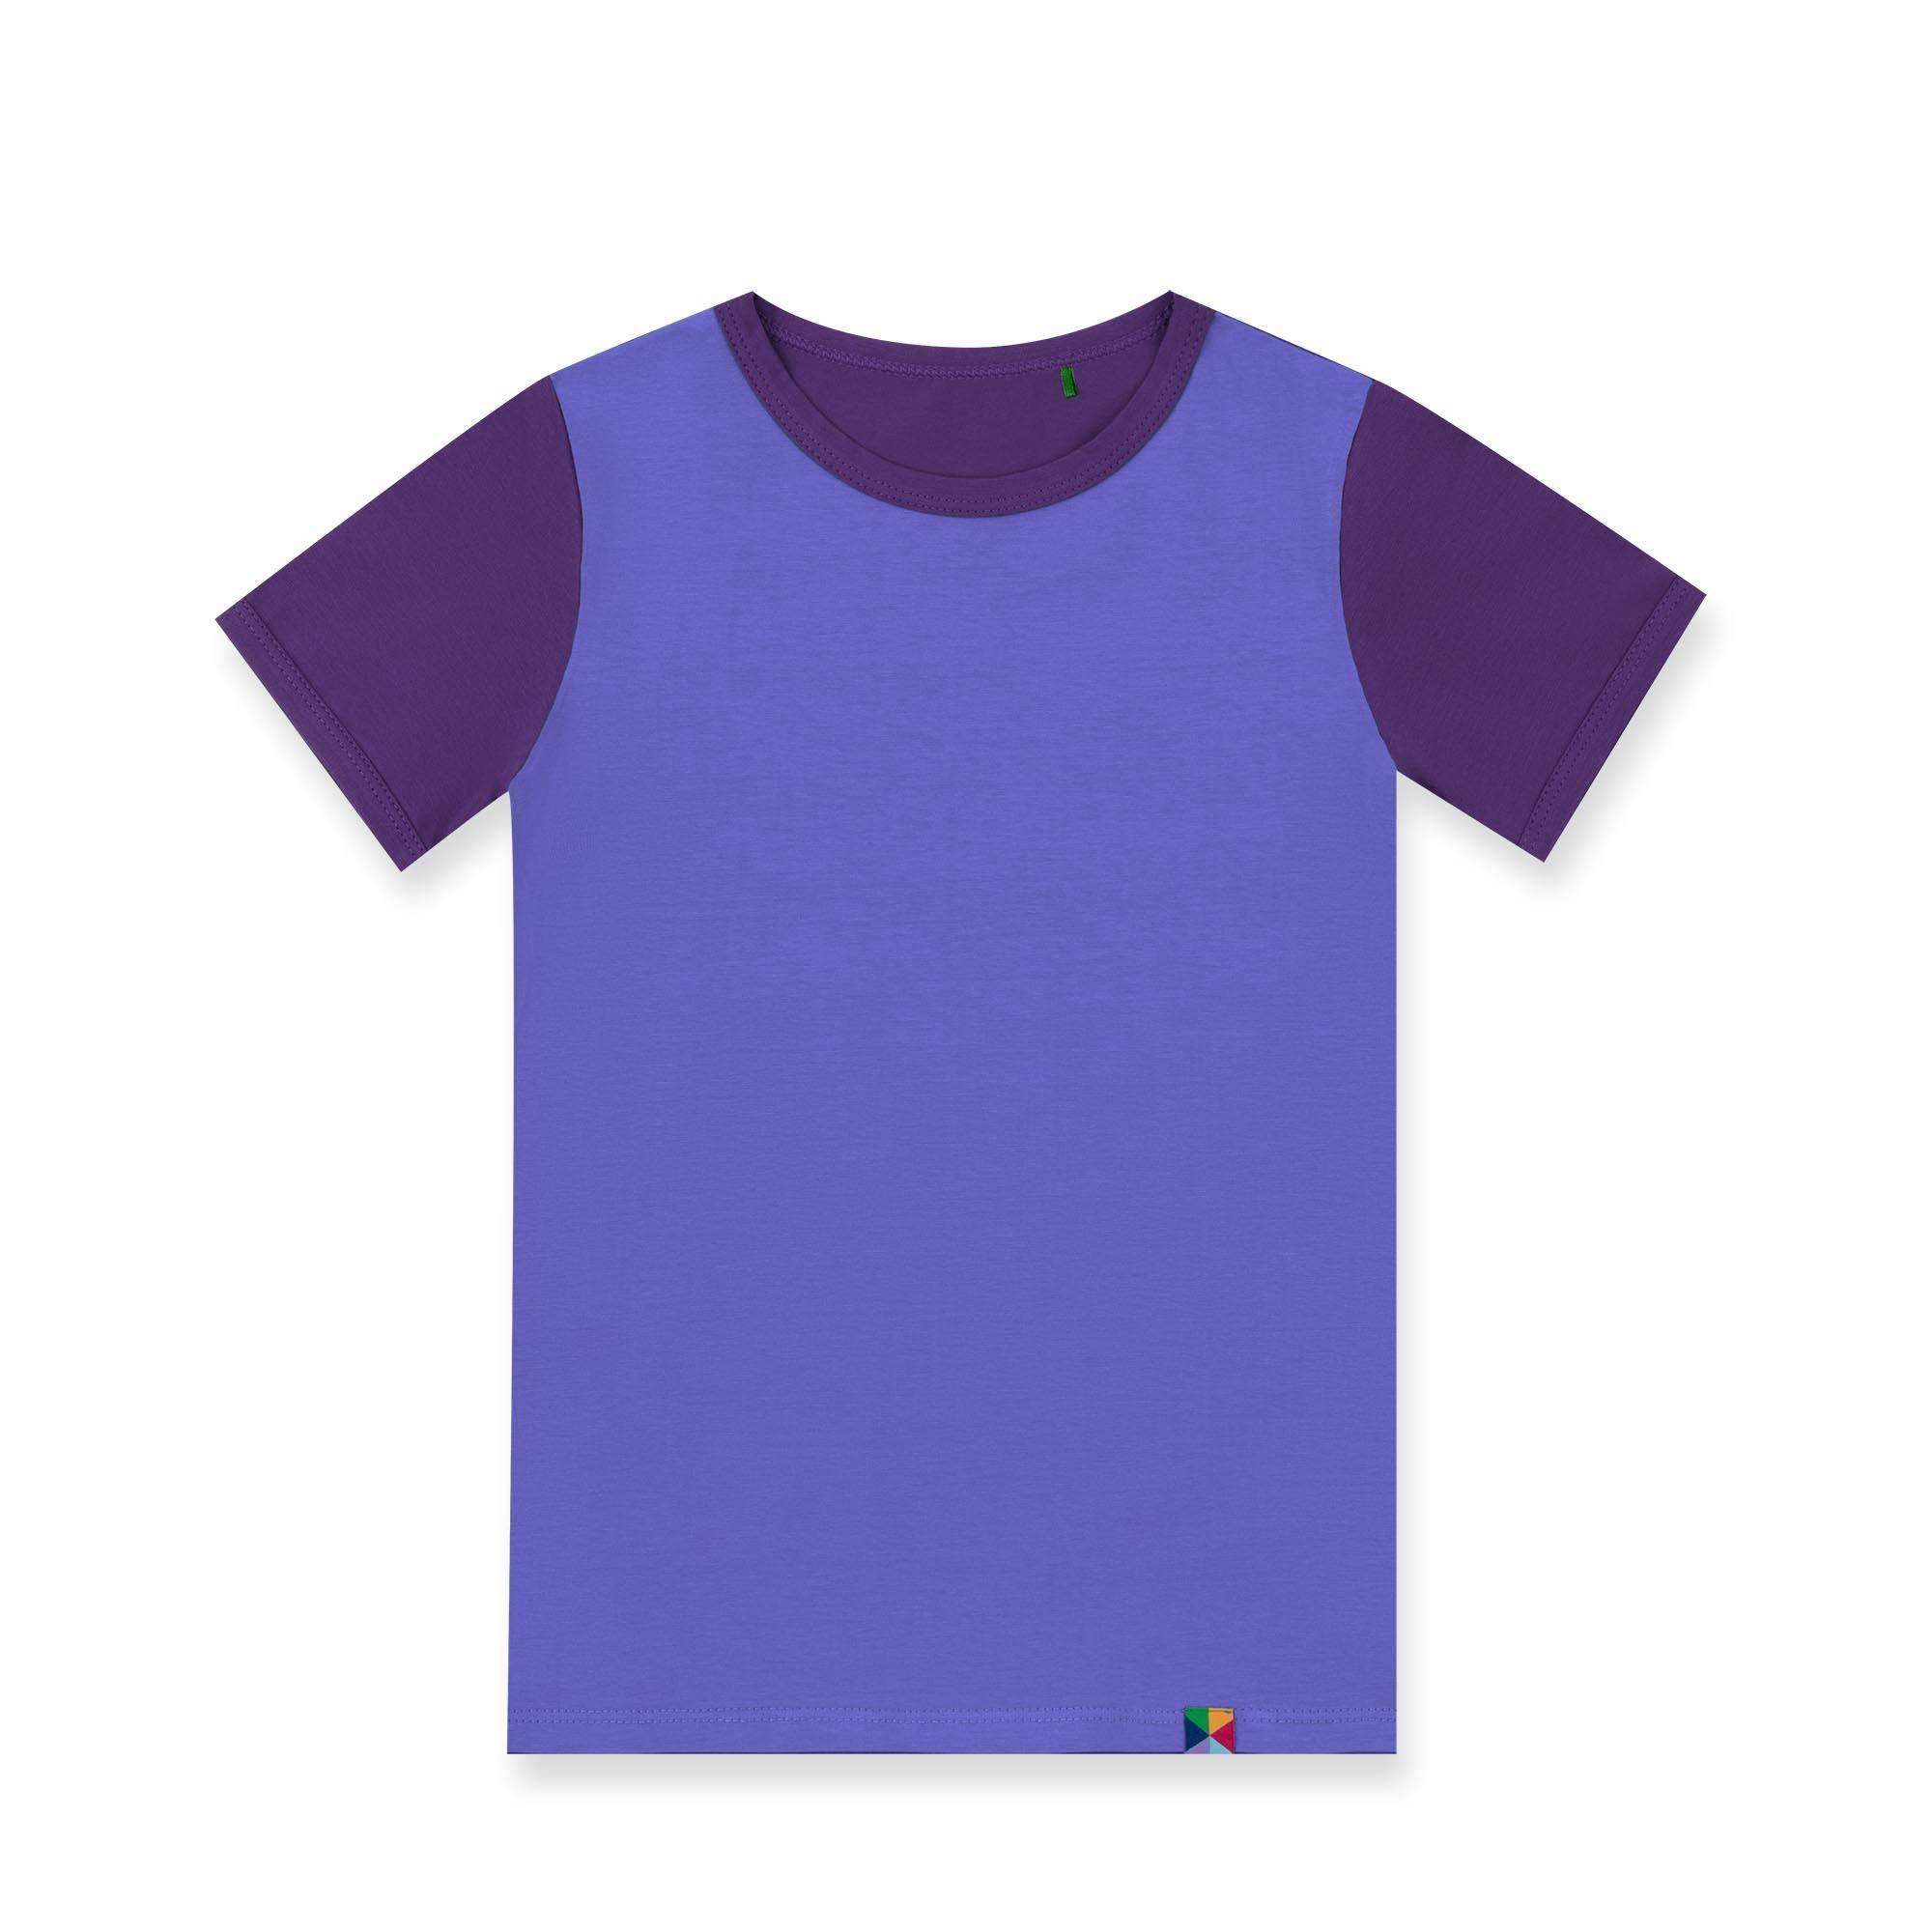 Barwinkowo-fioletowa koszulka dwukolorowa